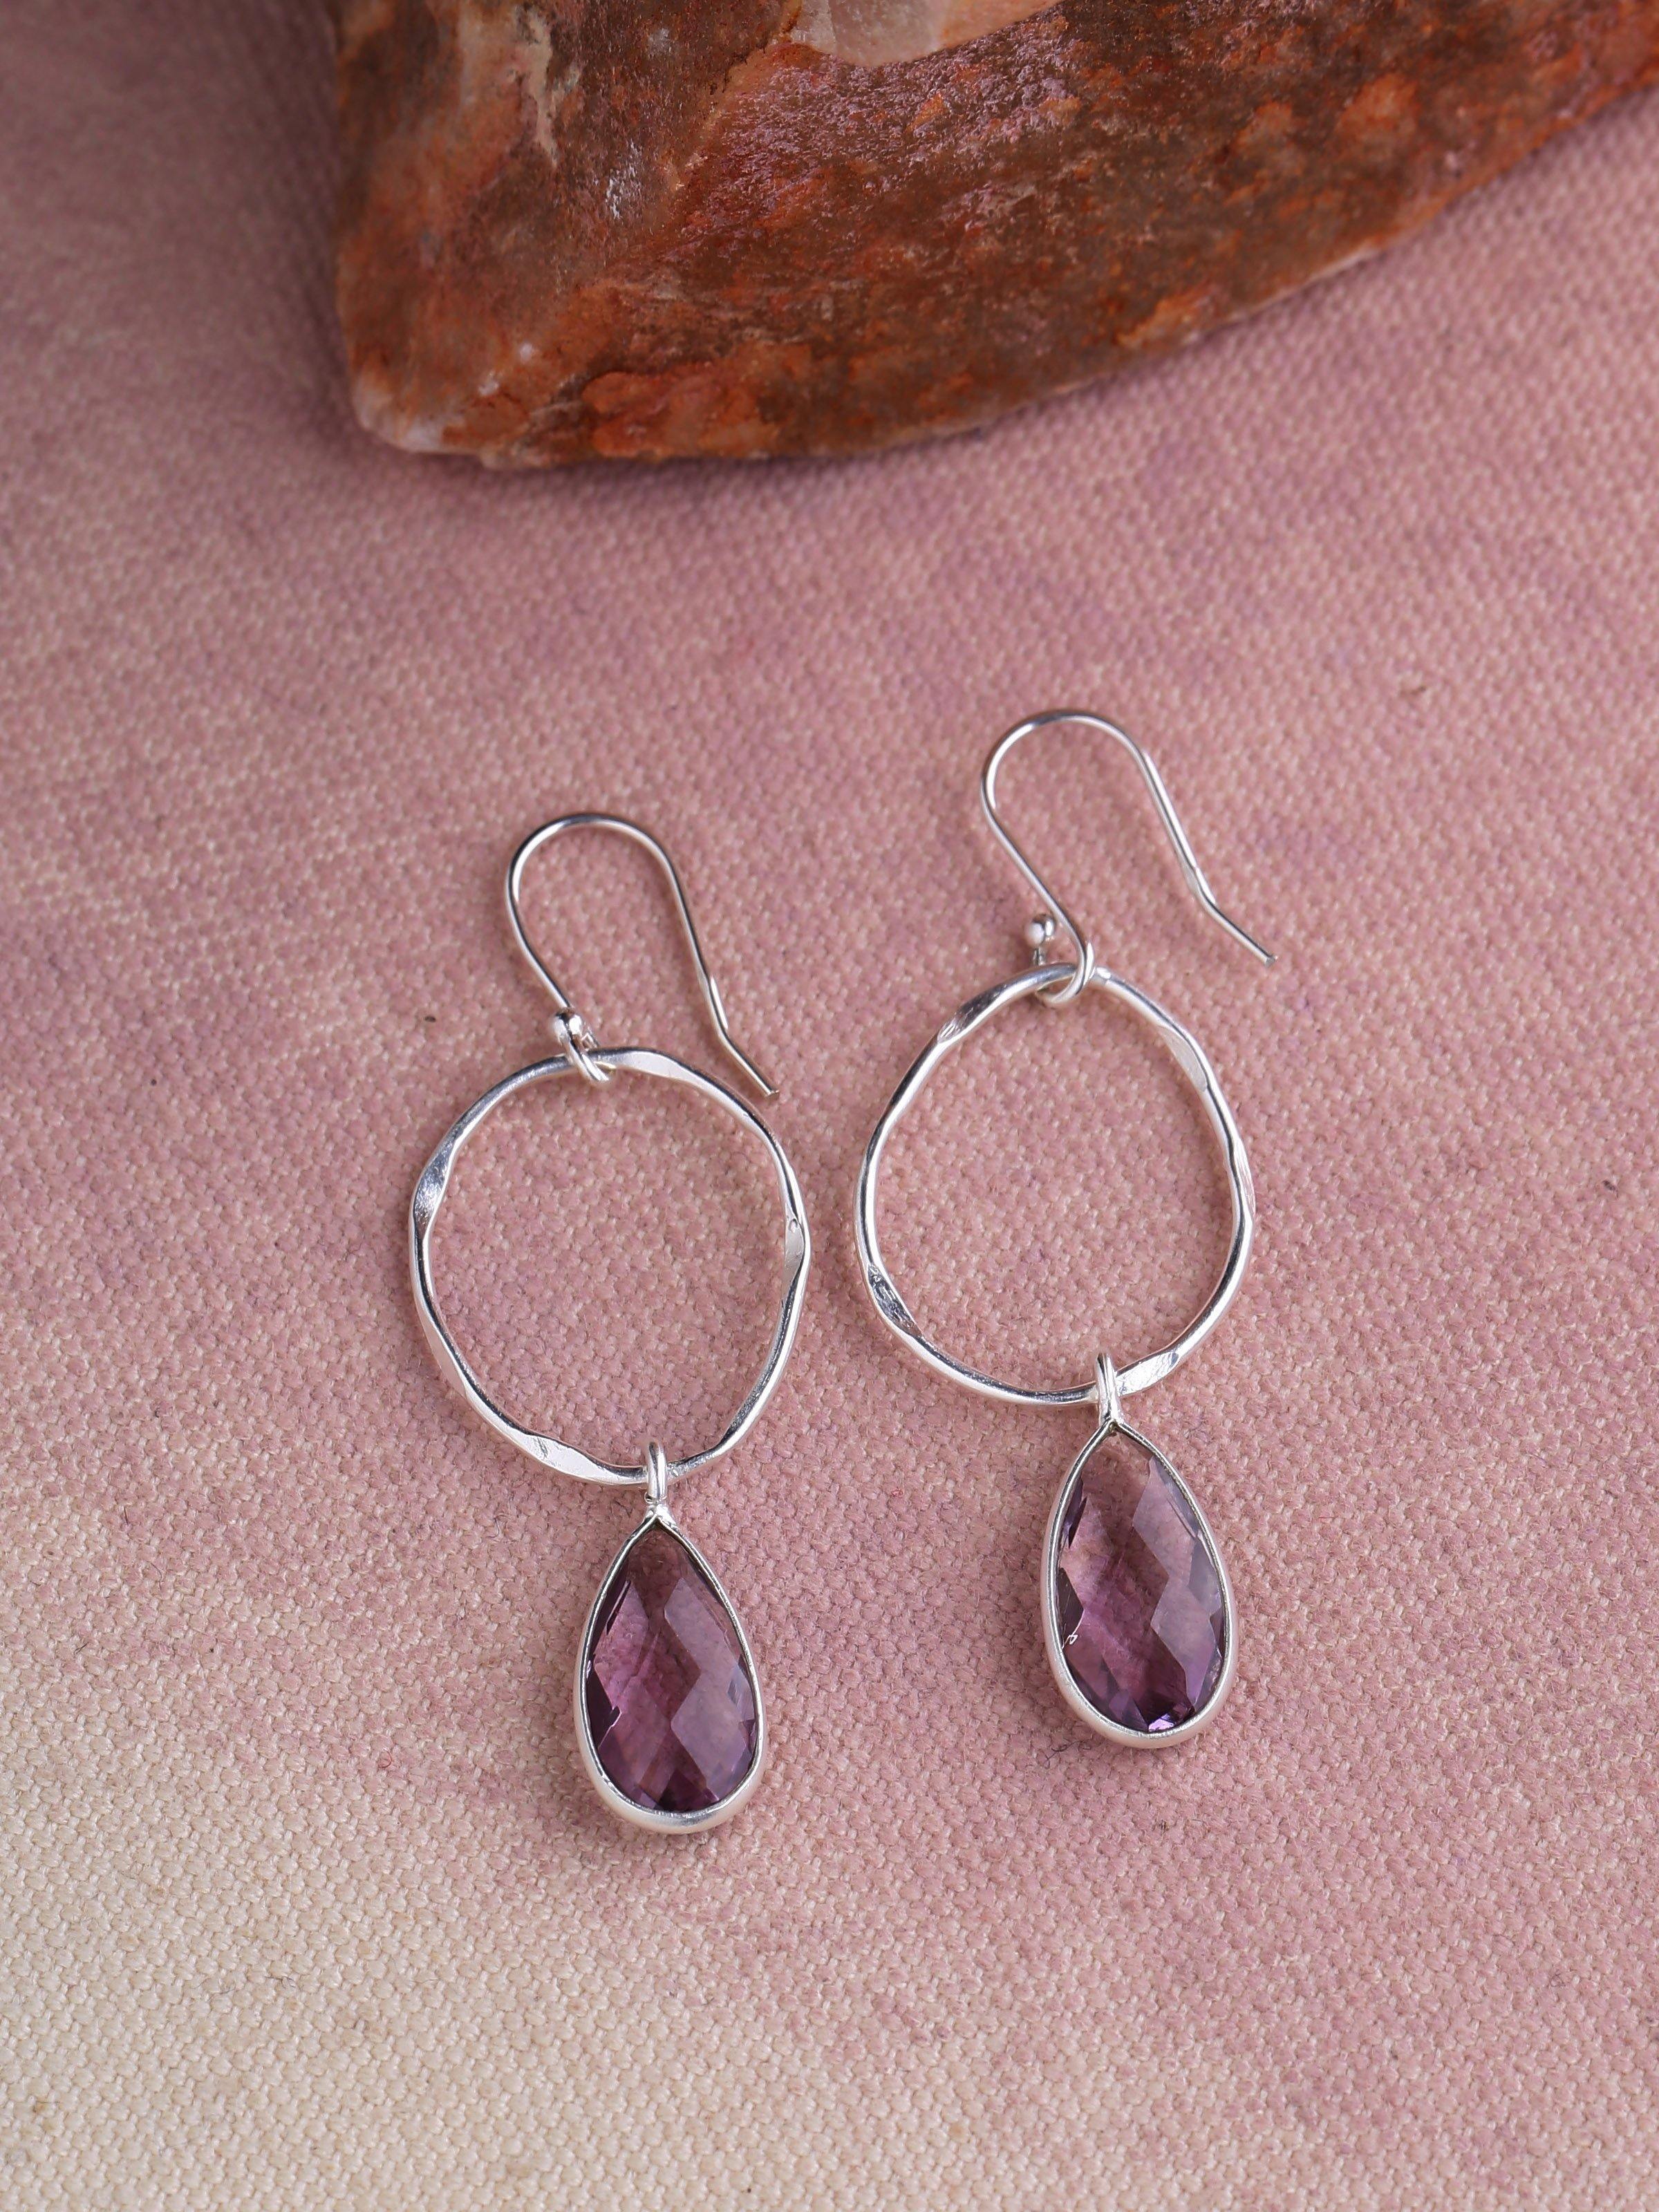 Amethyst Solid 925 Sterling Silver Teardrop Dangle Earrings Jewelry - YoTreasure